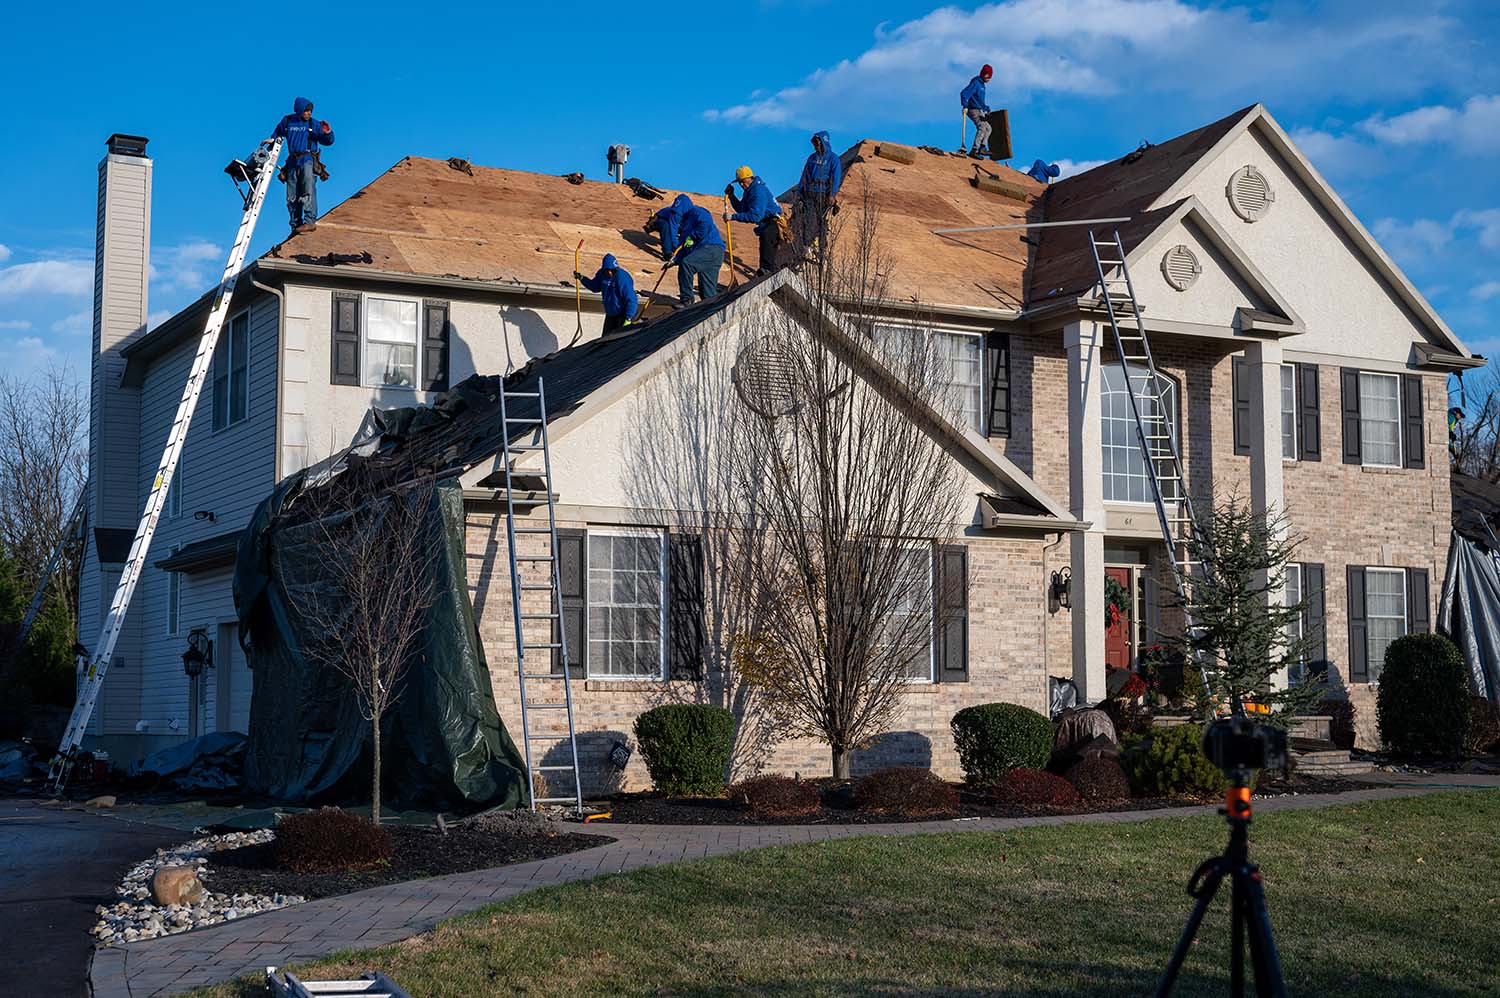 Langhorne Roofing repair company - residential roofing contractors in Langhorne, PA (medium image)